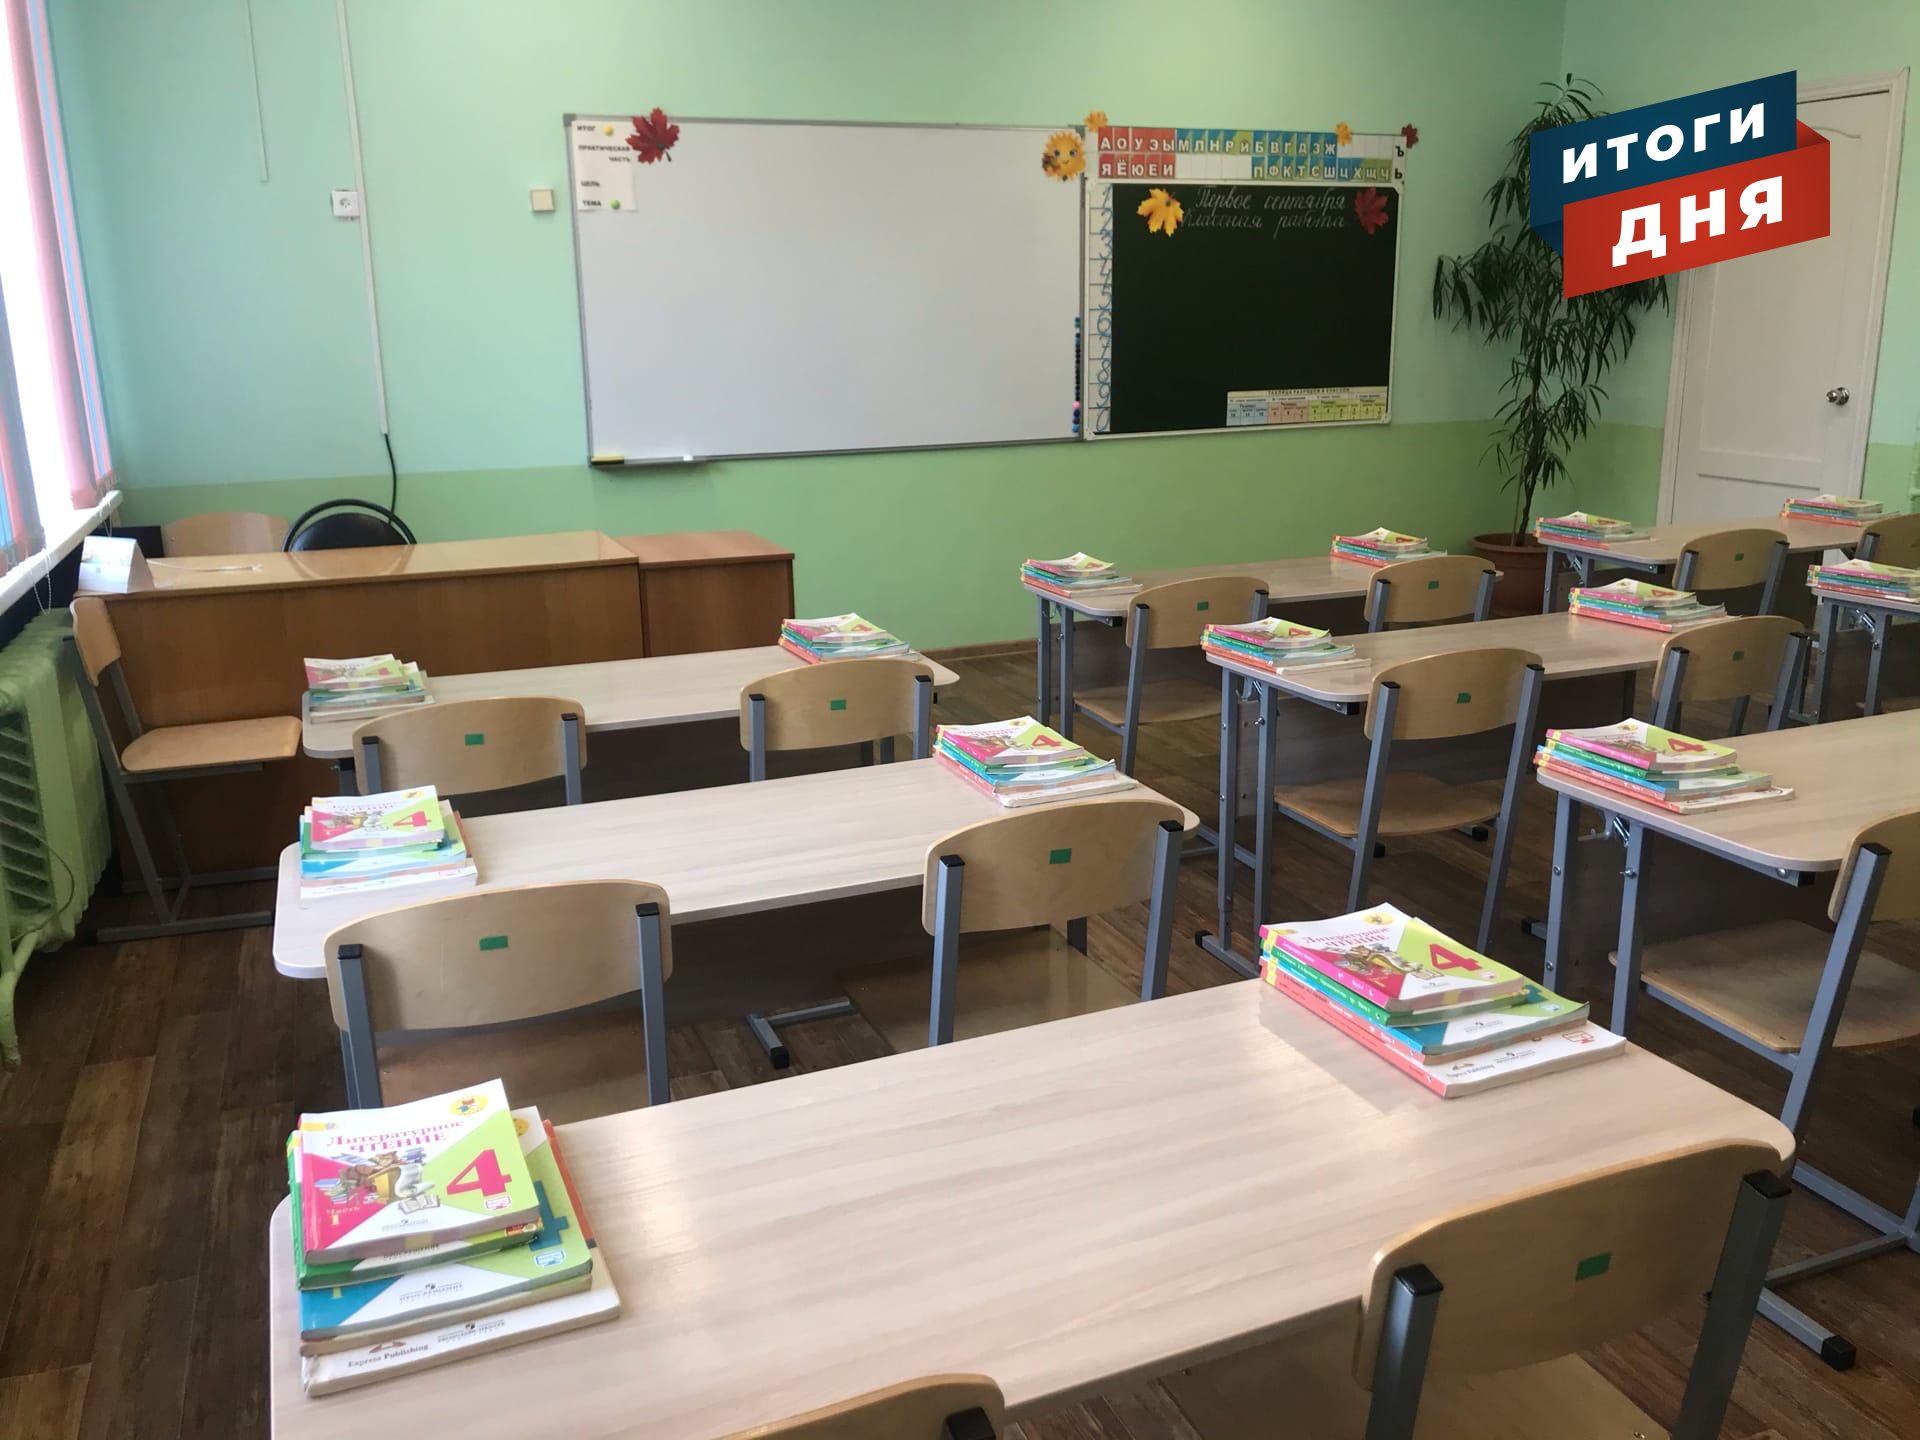 Итоги дня: карантин в школах Ижевска, новая схема телефонных мошенничеств и отмена концертов Лазарева и Крида